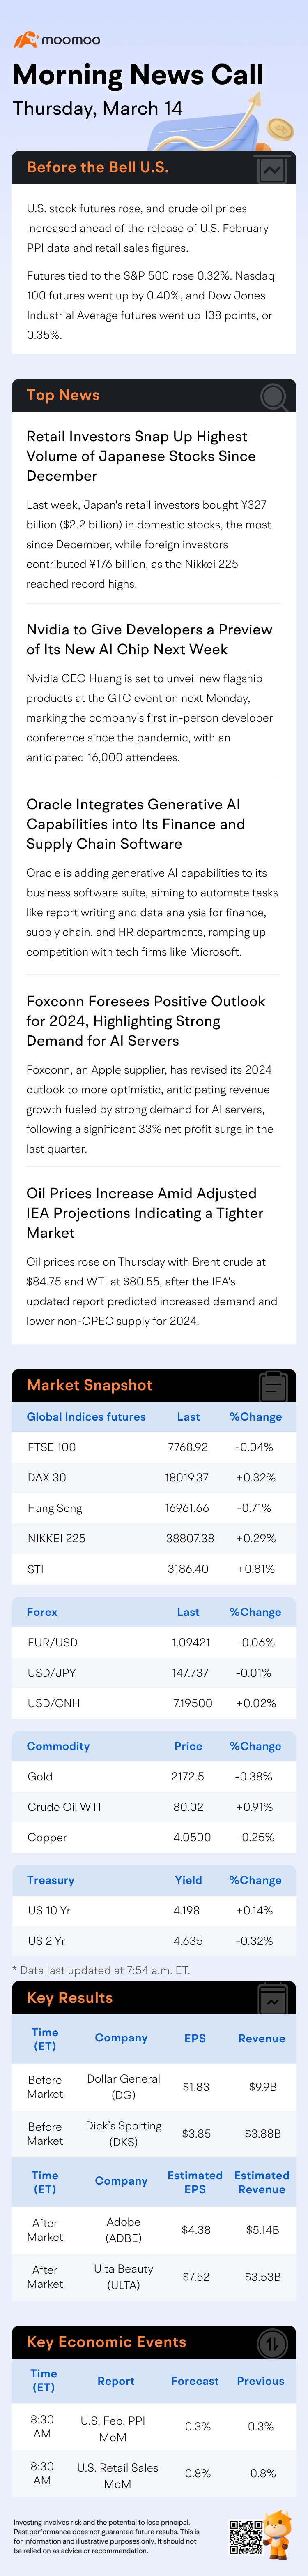 早间新闻电话会议 | PPI数据发布前，美国股票期货和原油价格上涨